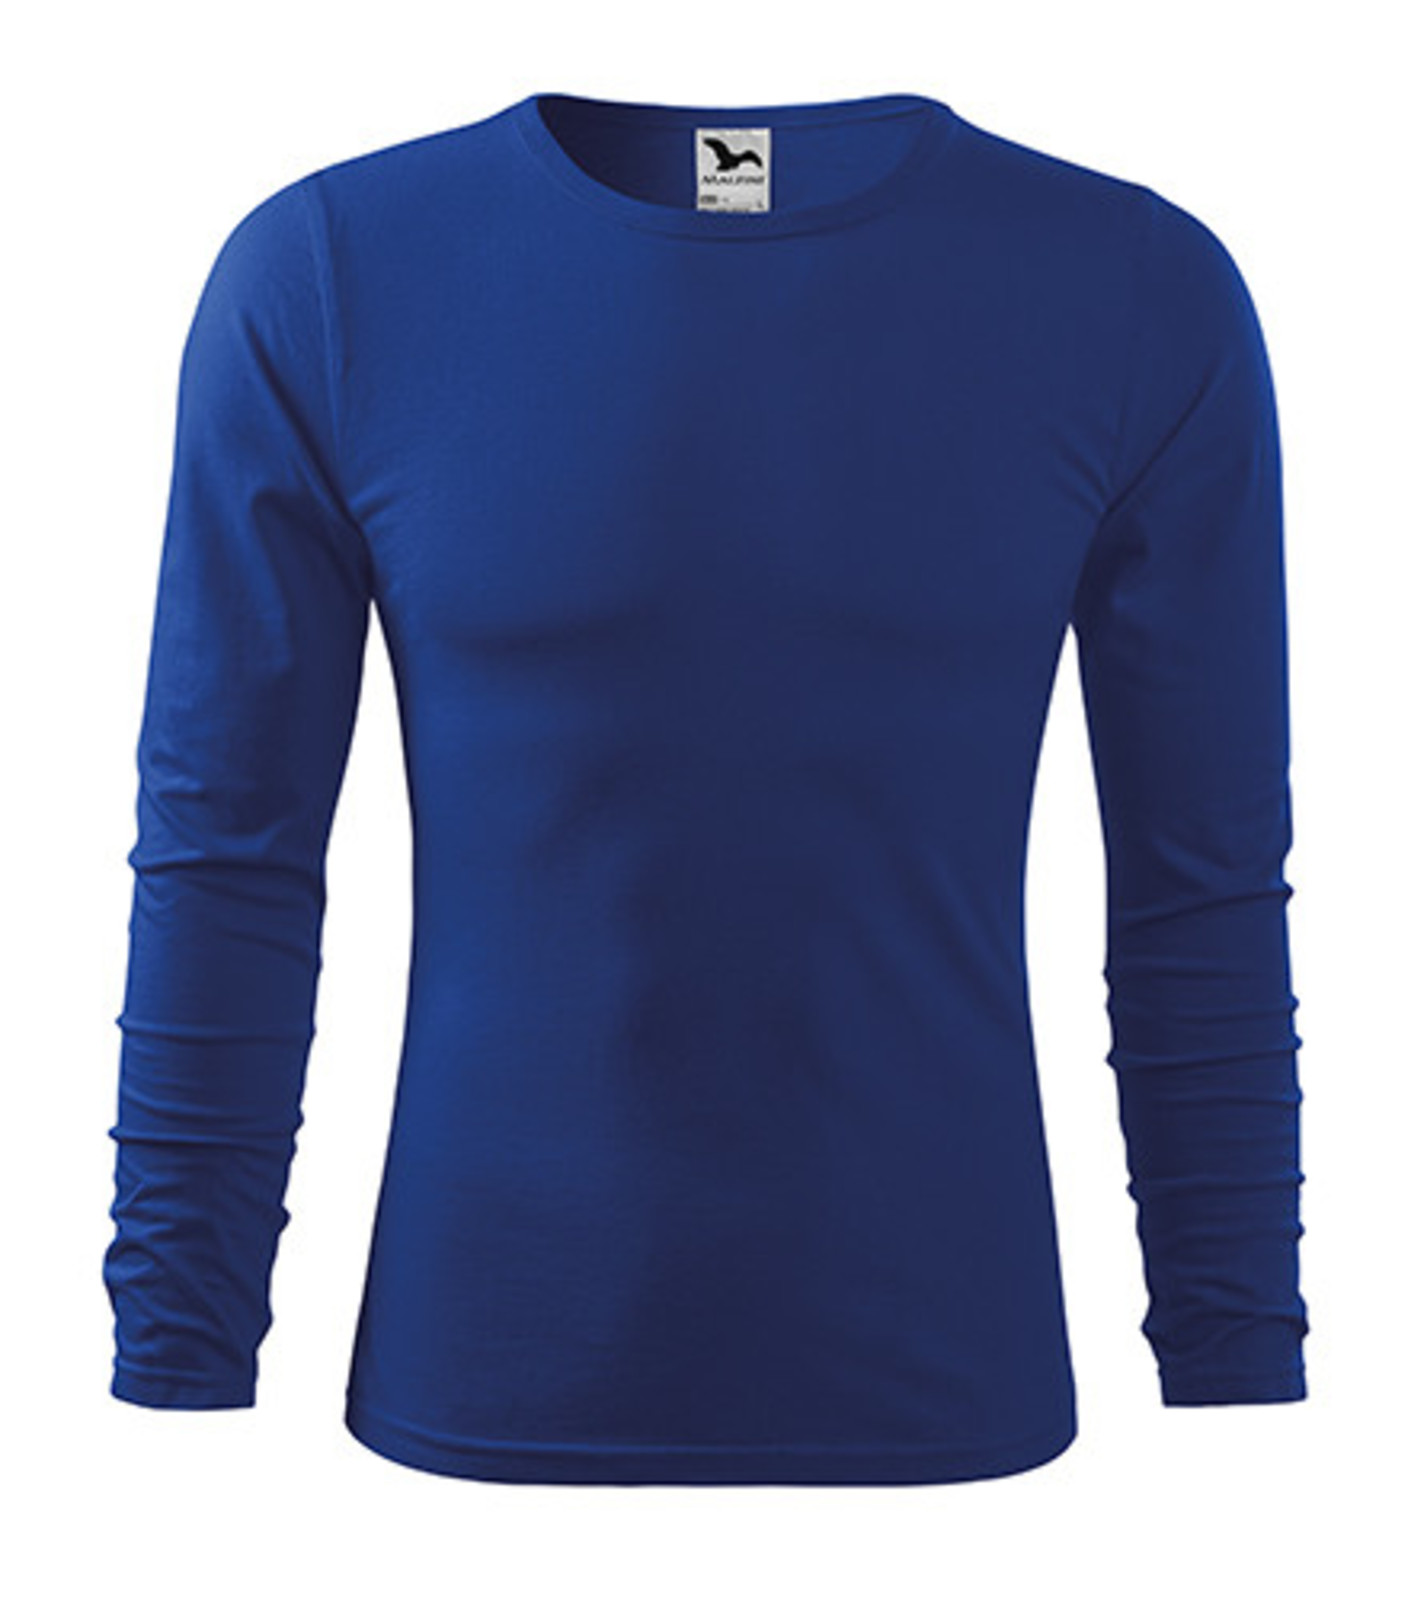 Pánske bavlnené tričko s dlhým rukávom Malfini Fit-T 119 - veľkosť: L, farba: kráľovská modrá